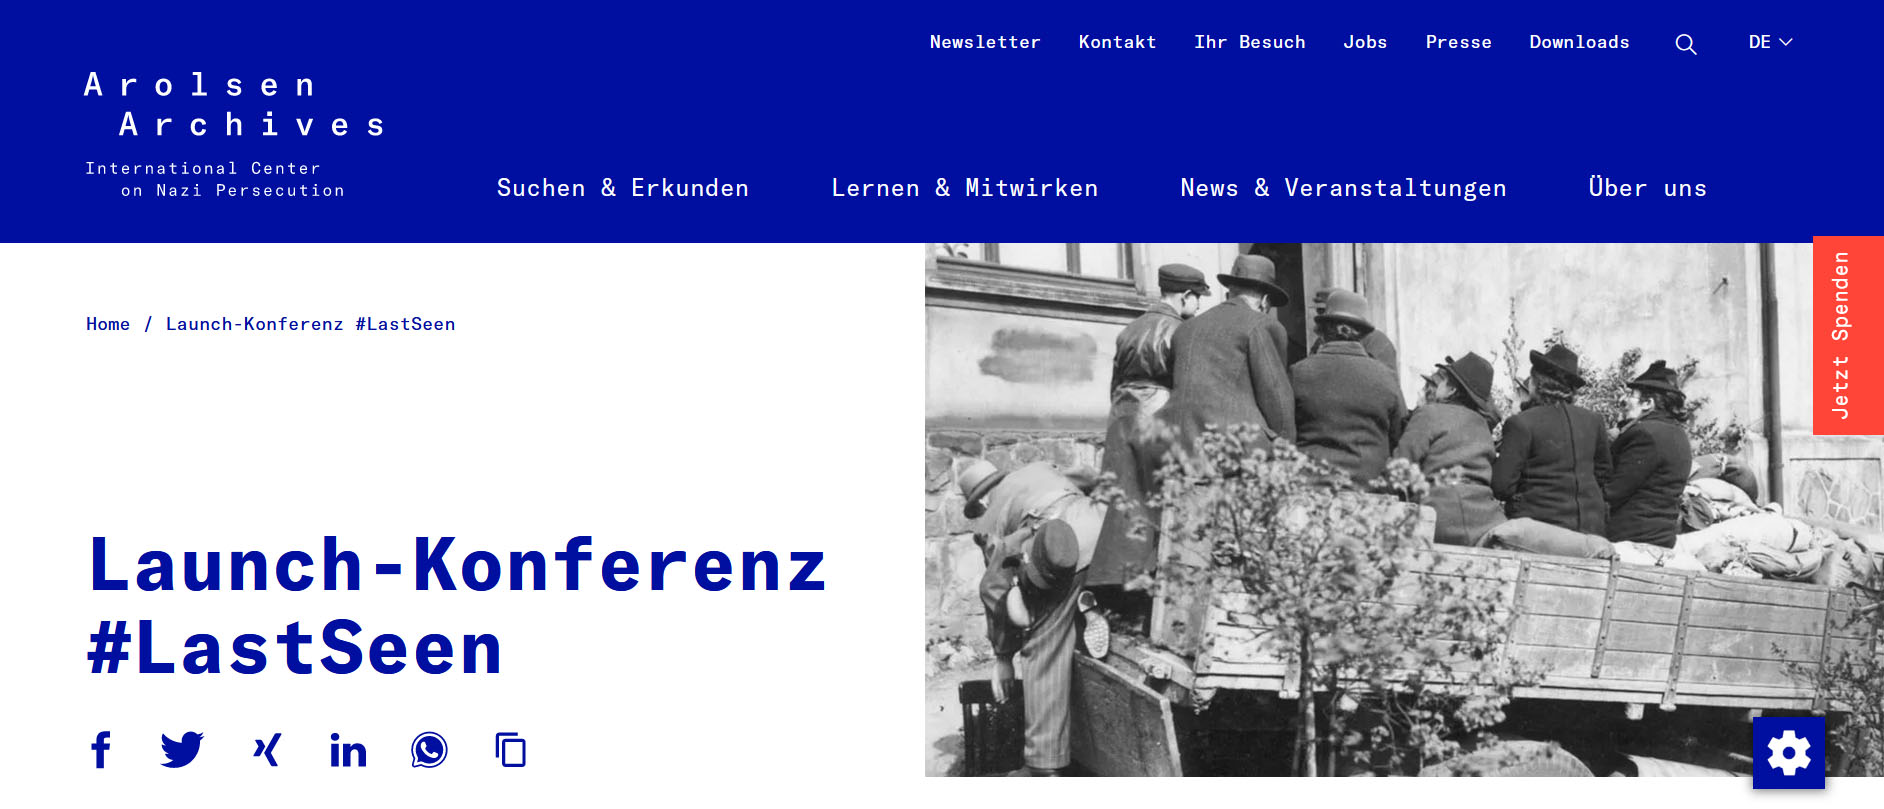 Screenshot der Website Arolsen Archives mit der Konferenzankündigung; im Bild ein offener Pritschenwagen vor einem Haus, auf dem mehrere Menschen mit ihrem Gepäck sitzen.